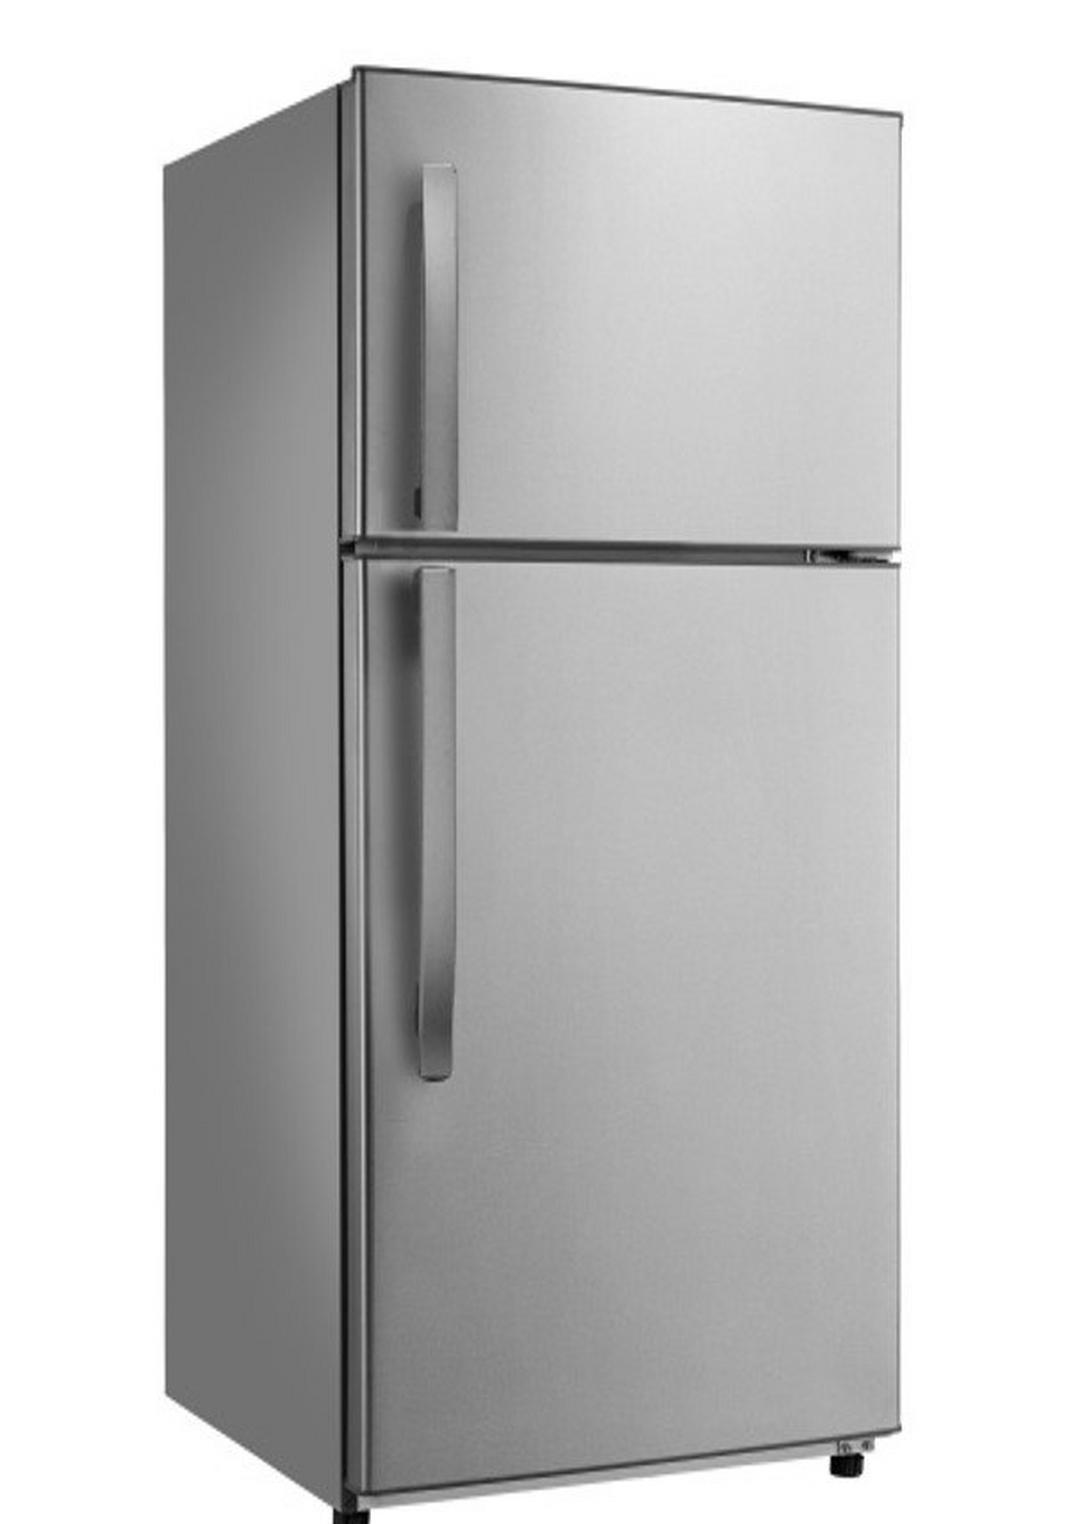 Wansa 18 CFT Top Mount Refrigerator (WRTW-520-NFSSC622) - Stainless Steel